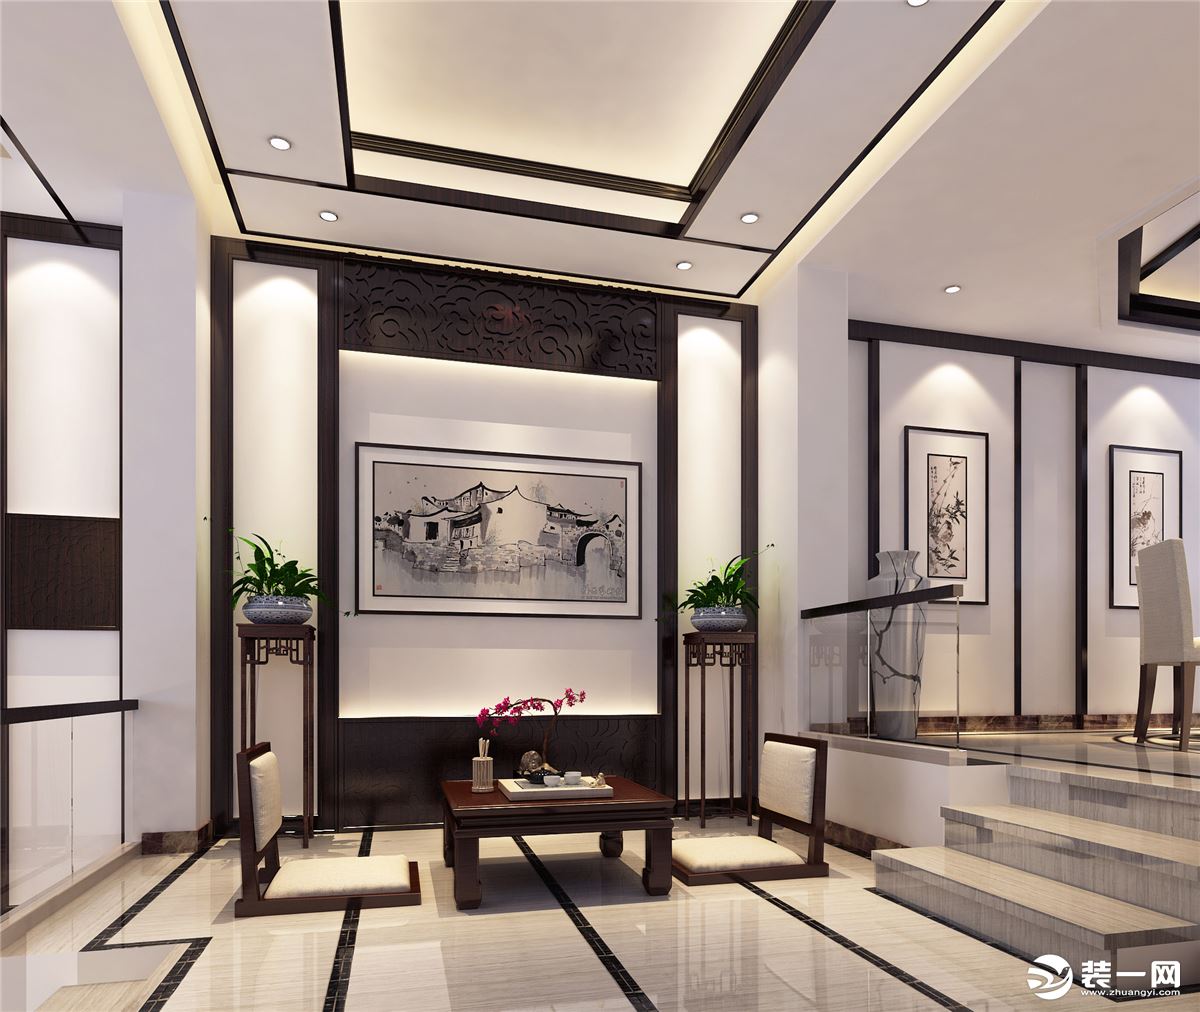 【苏州东易日盛】300平米新中式风格别墅客厅装修效果图